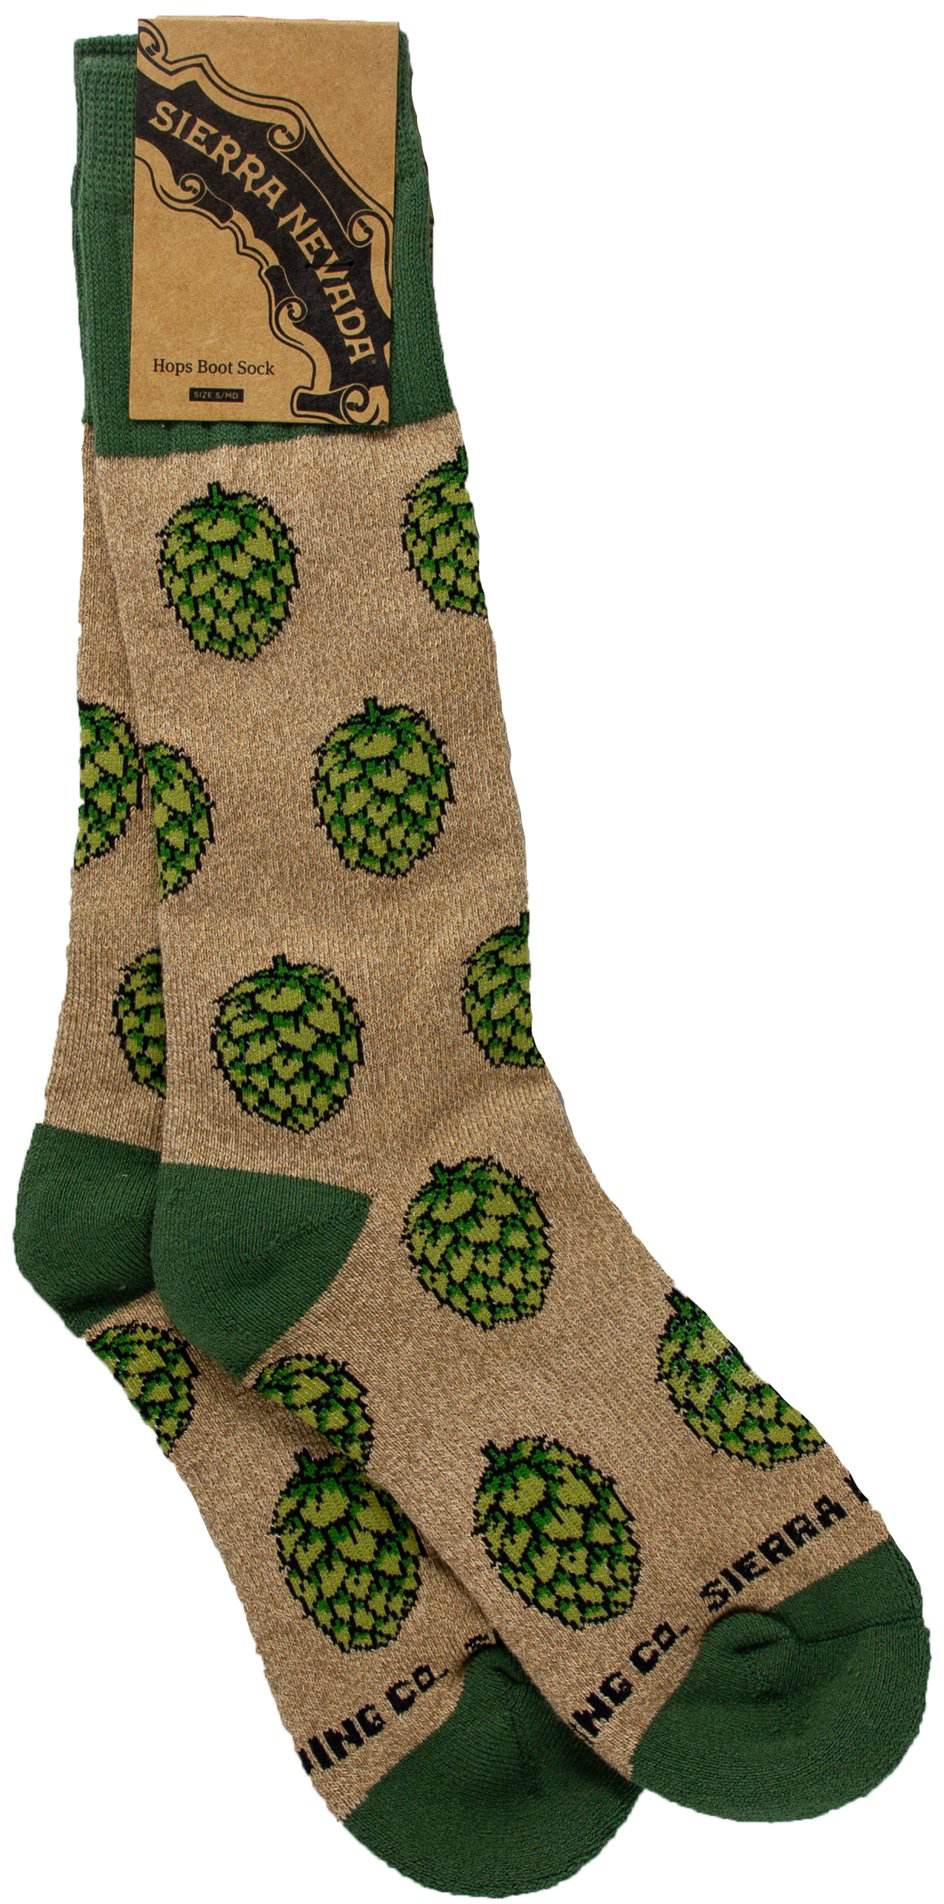 Sierra Nevada Brewing Co. Hop Socks featuring hop pattern